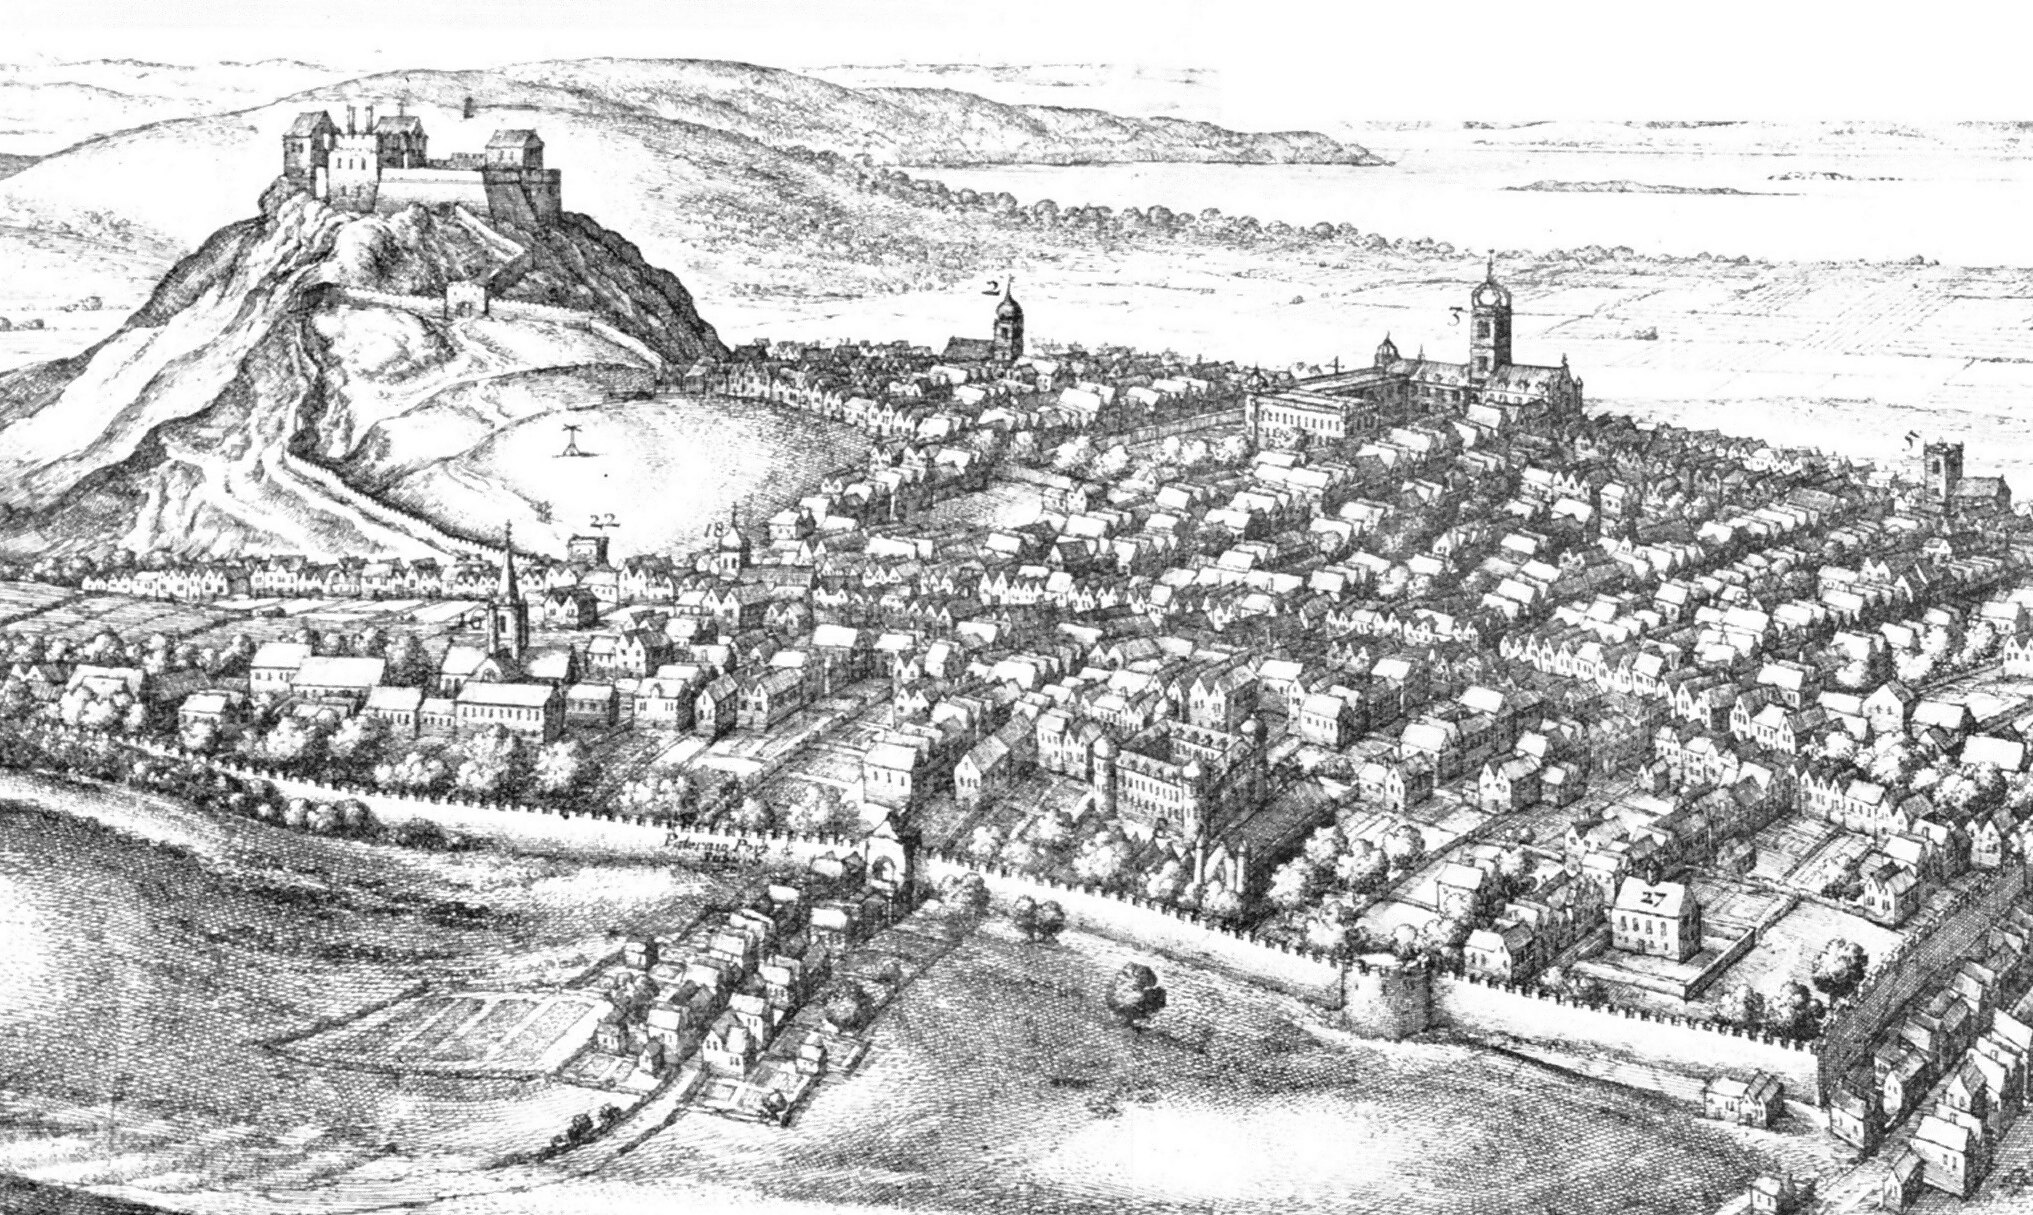 Edinburgh in the 17th century Wenceslas Hollar